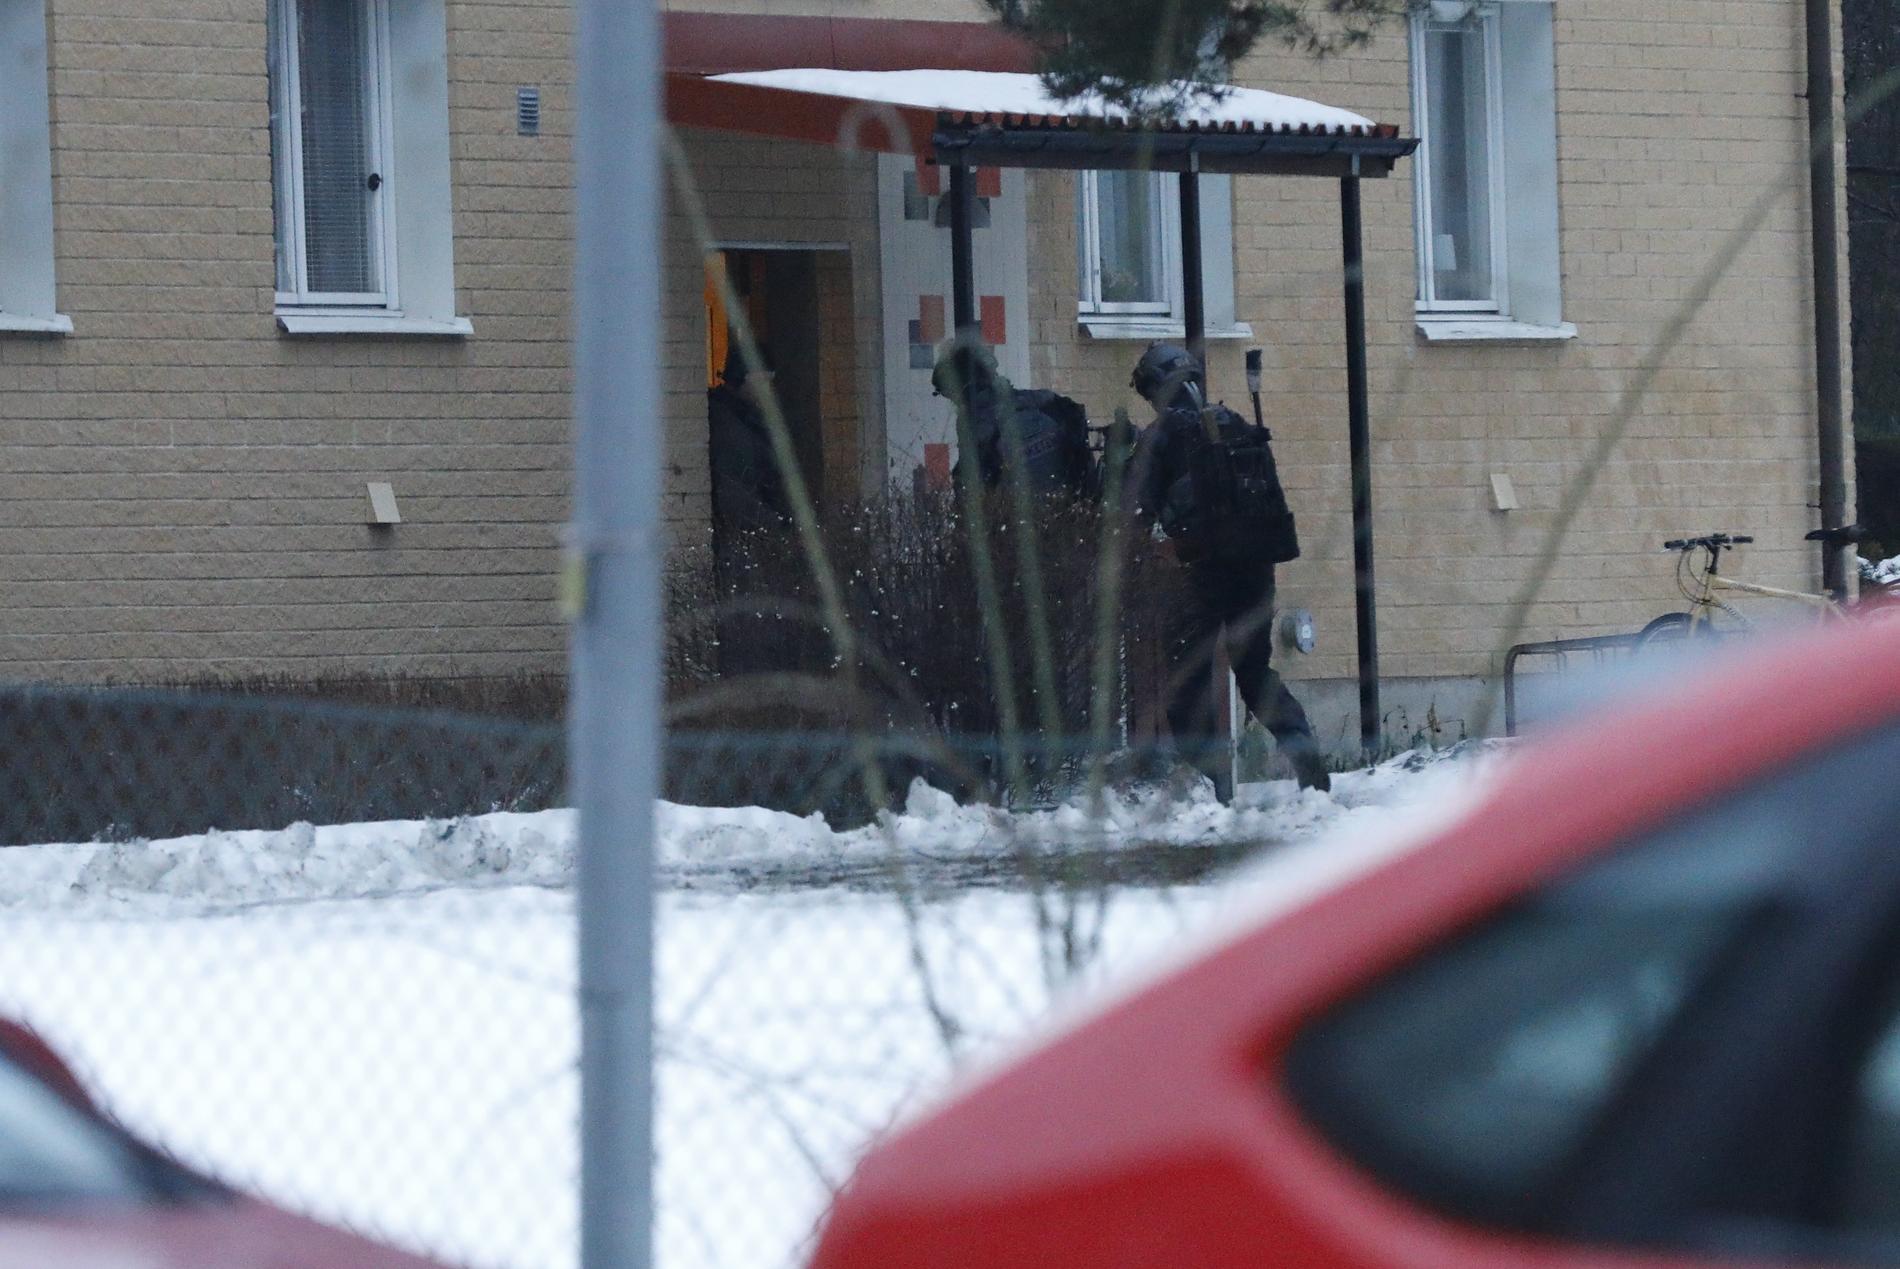 Polis vid adressen i Järfälla